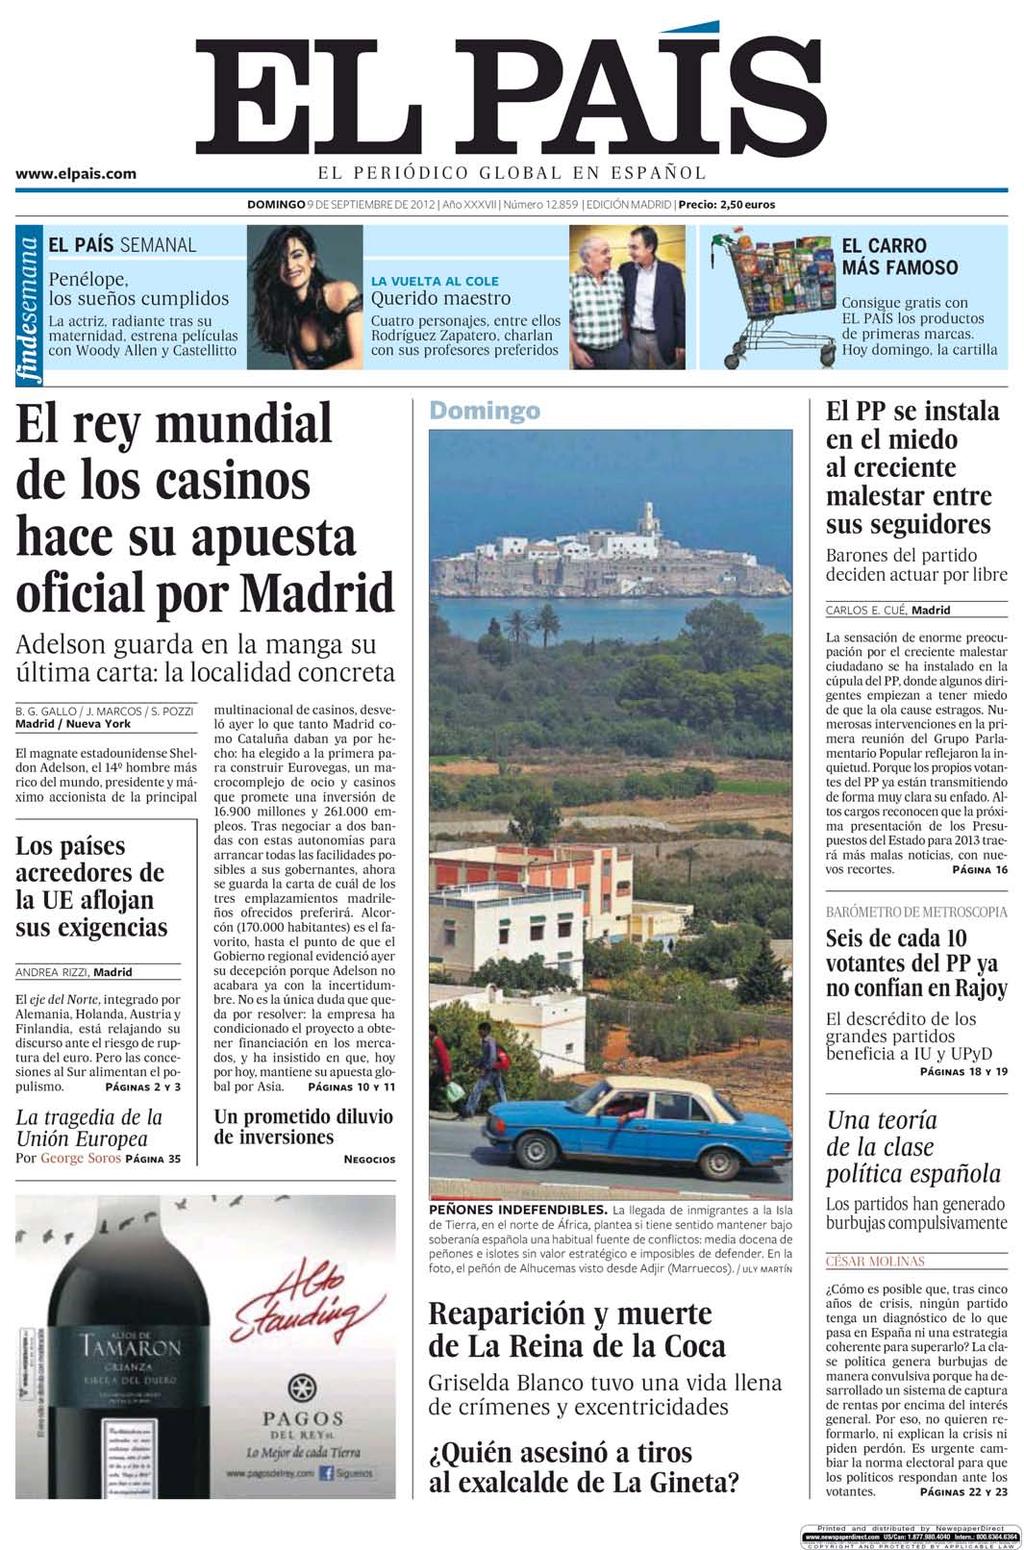 09/09/12 Kiosko y Más - El País - 9 sep 2012 - Page #1 lector.kioskoymas.